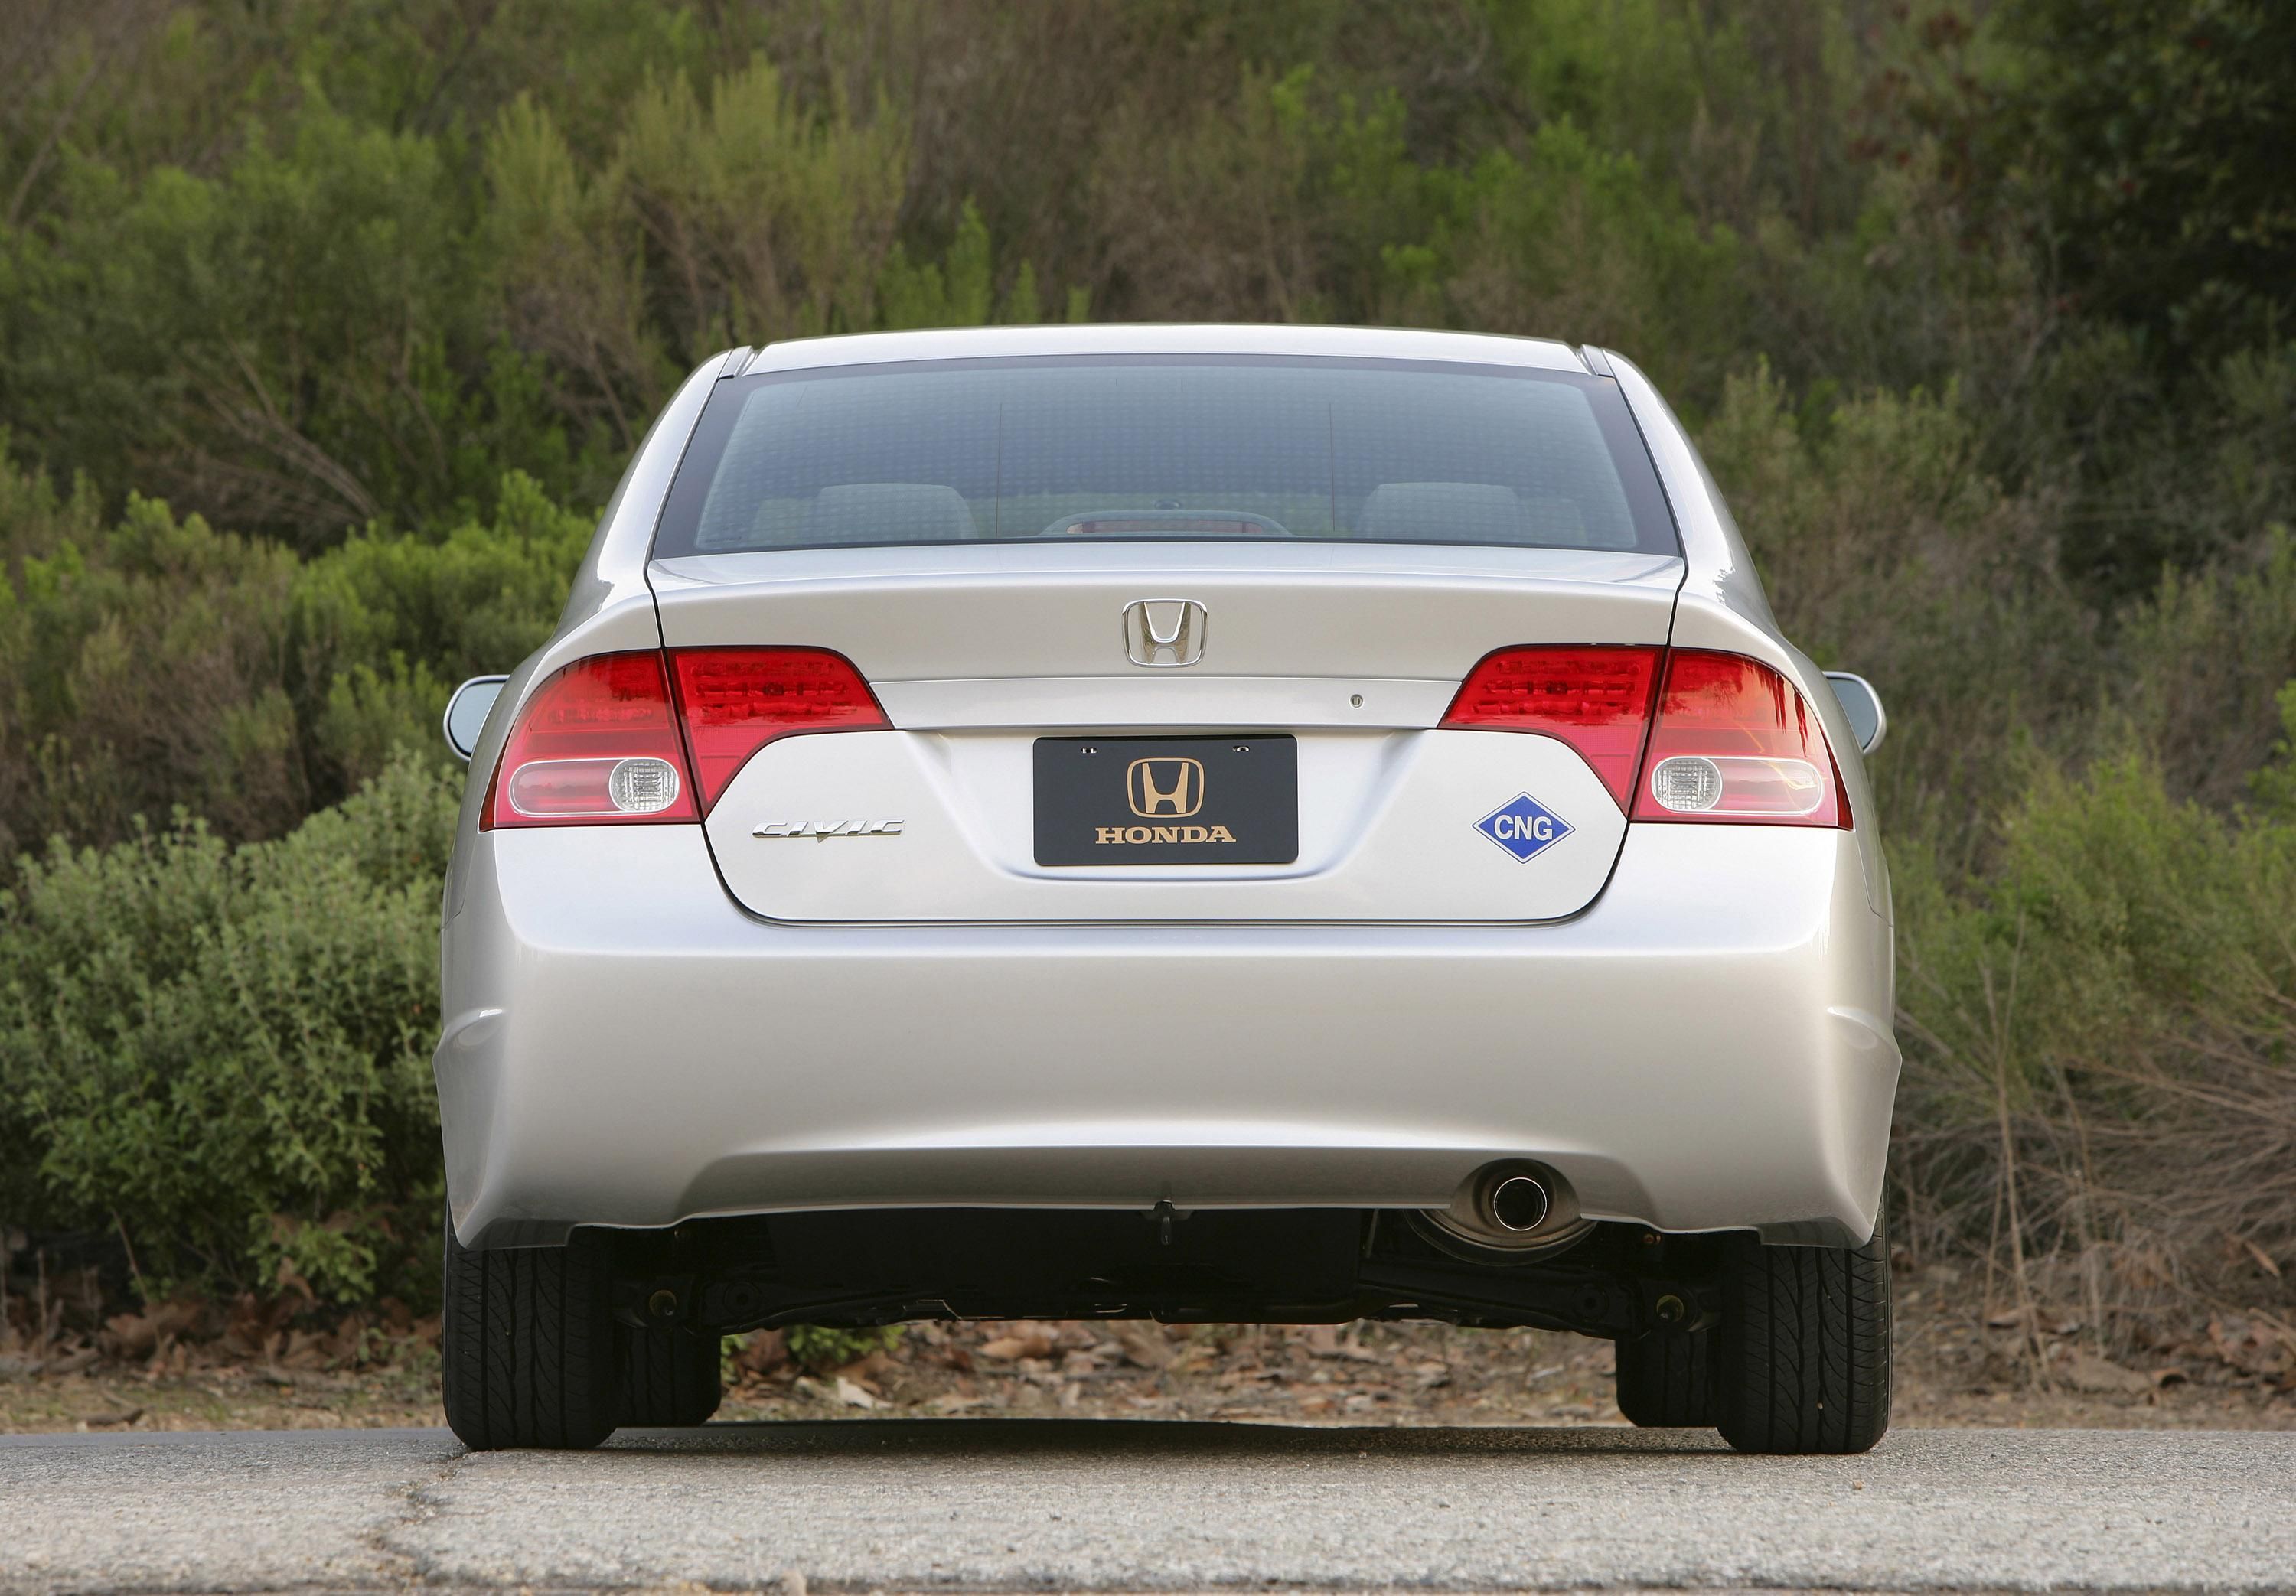 2007 Honda Civic GX